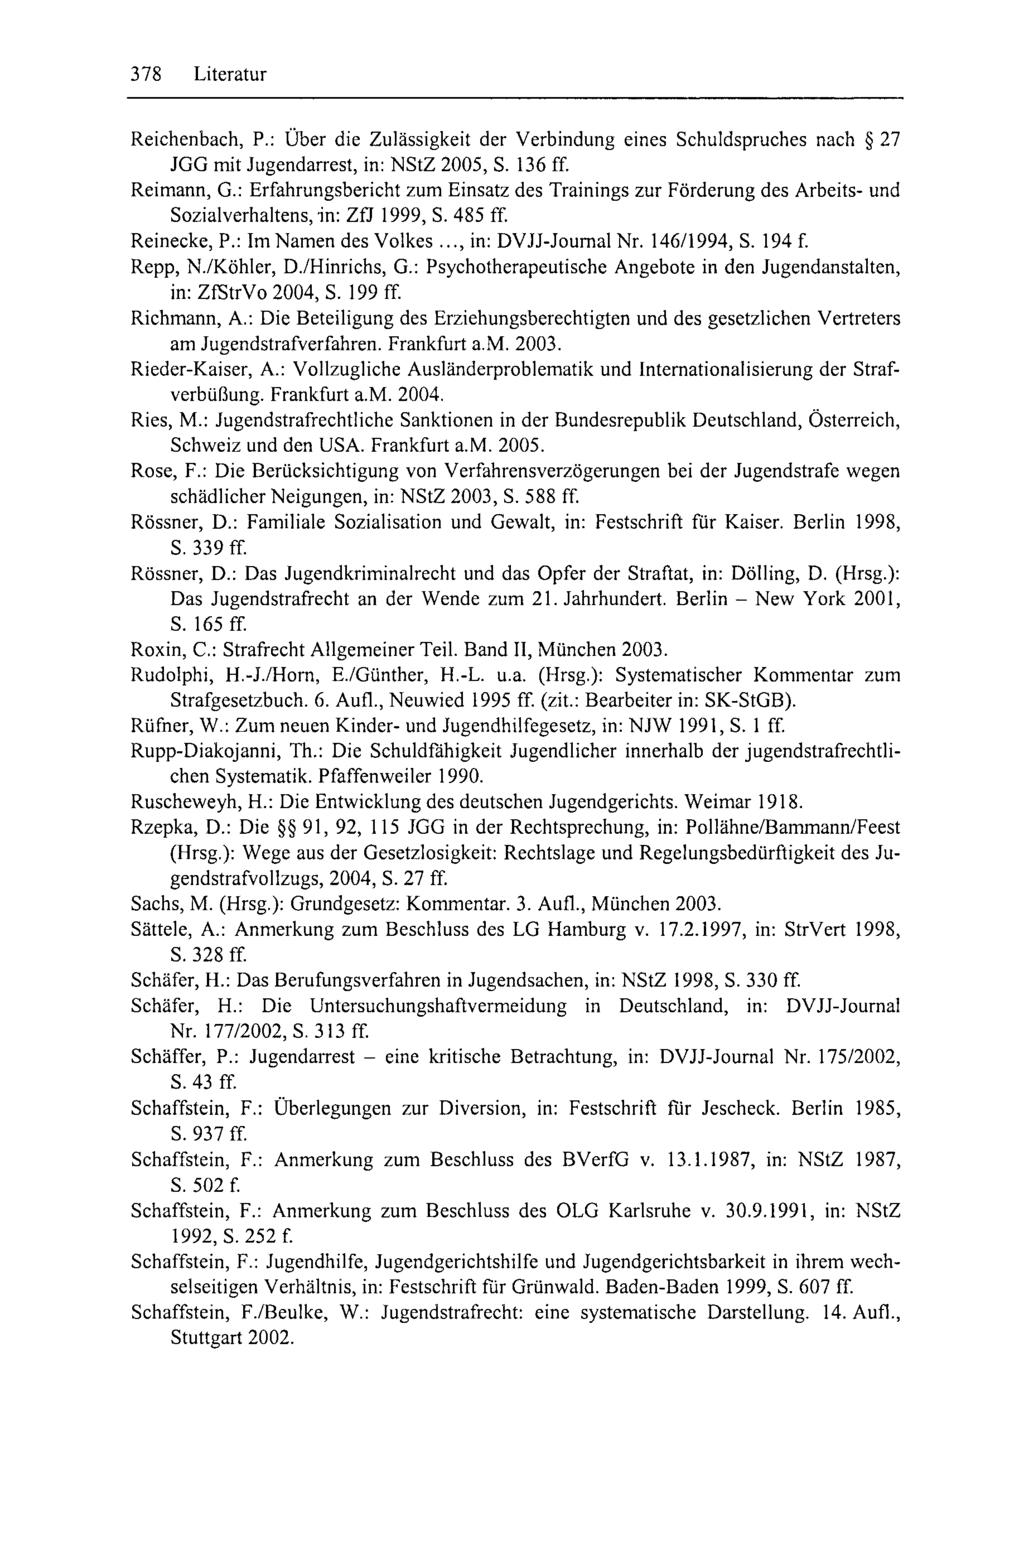 378 Literatur Reichenbach, P.: Über die Zulässigkeit der Verbindung eines Schuldspruches nach 27 JGG mit Jugendarrest, in: NStZ 2005, S. 136 ff. Reimann, G.